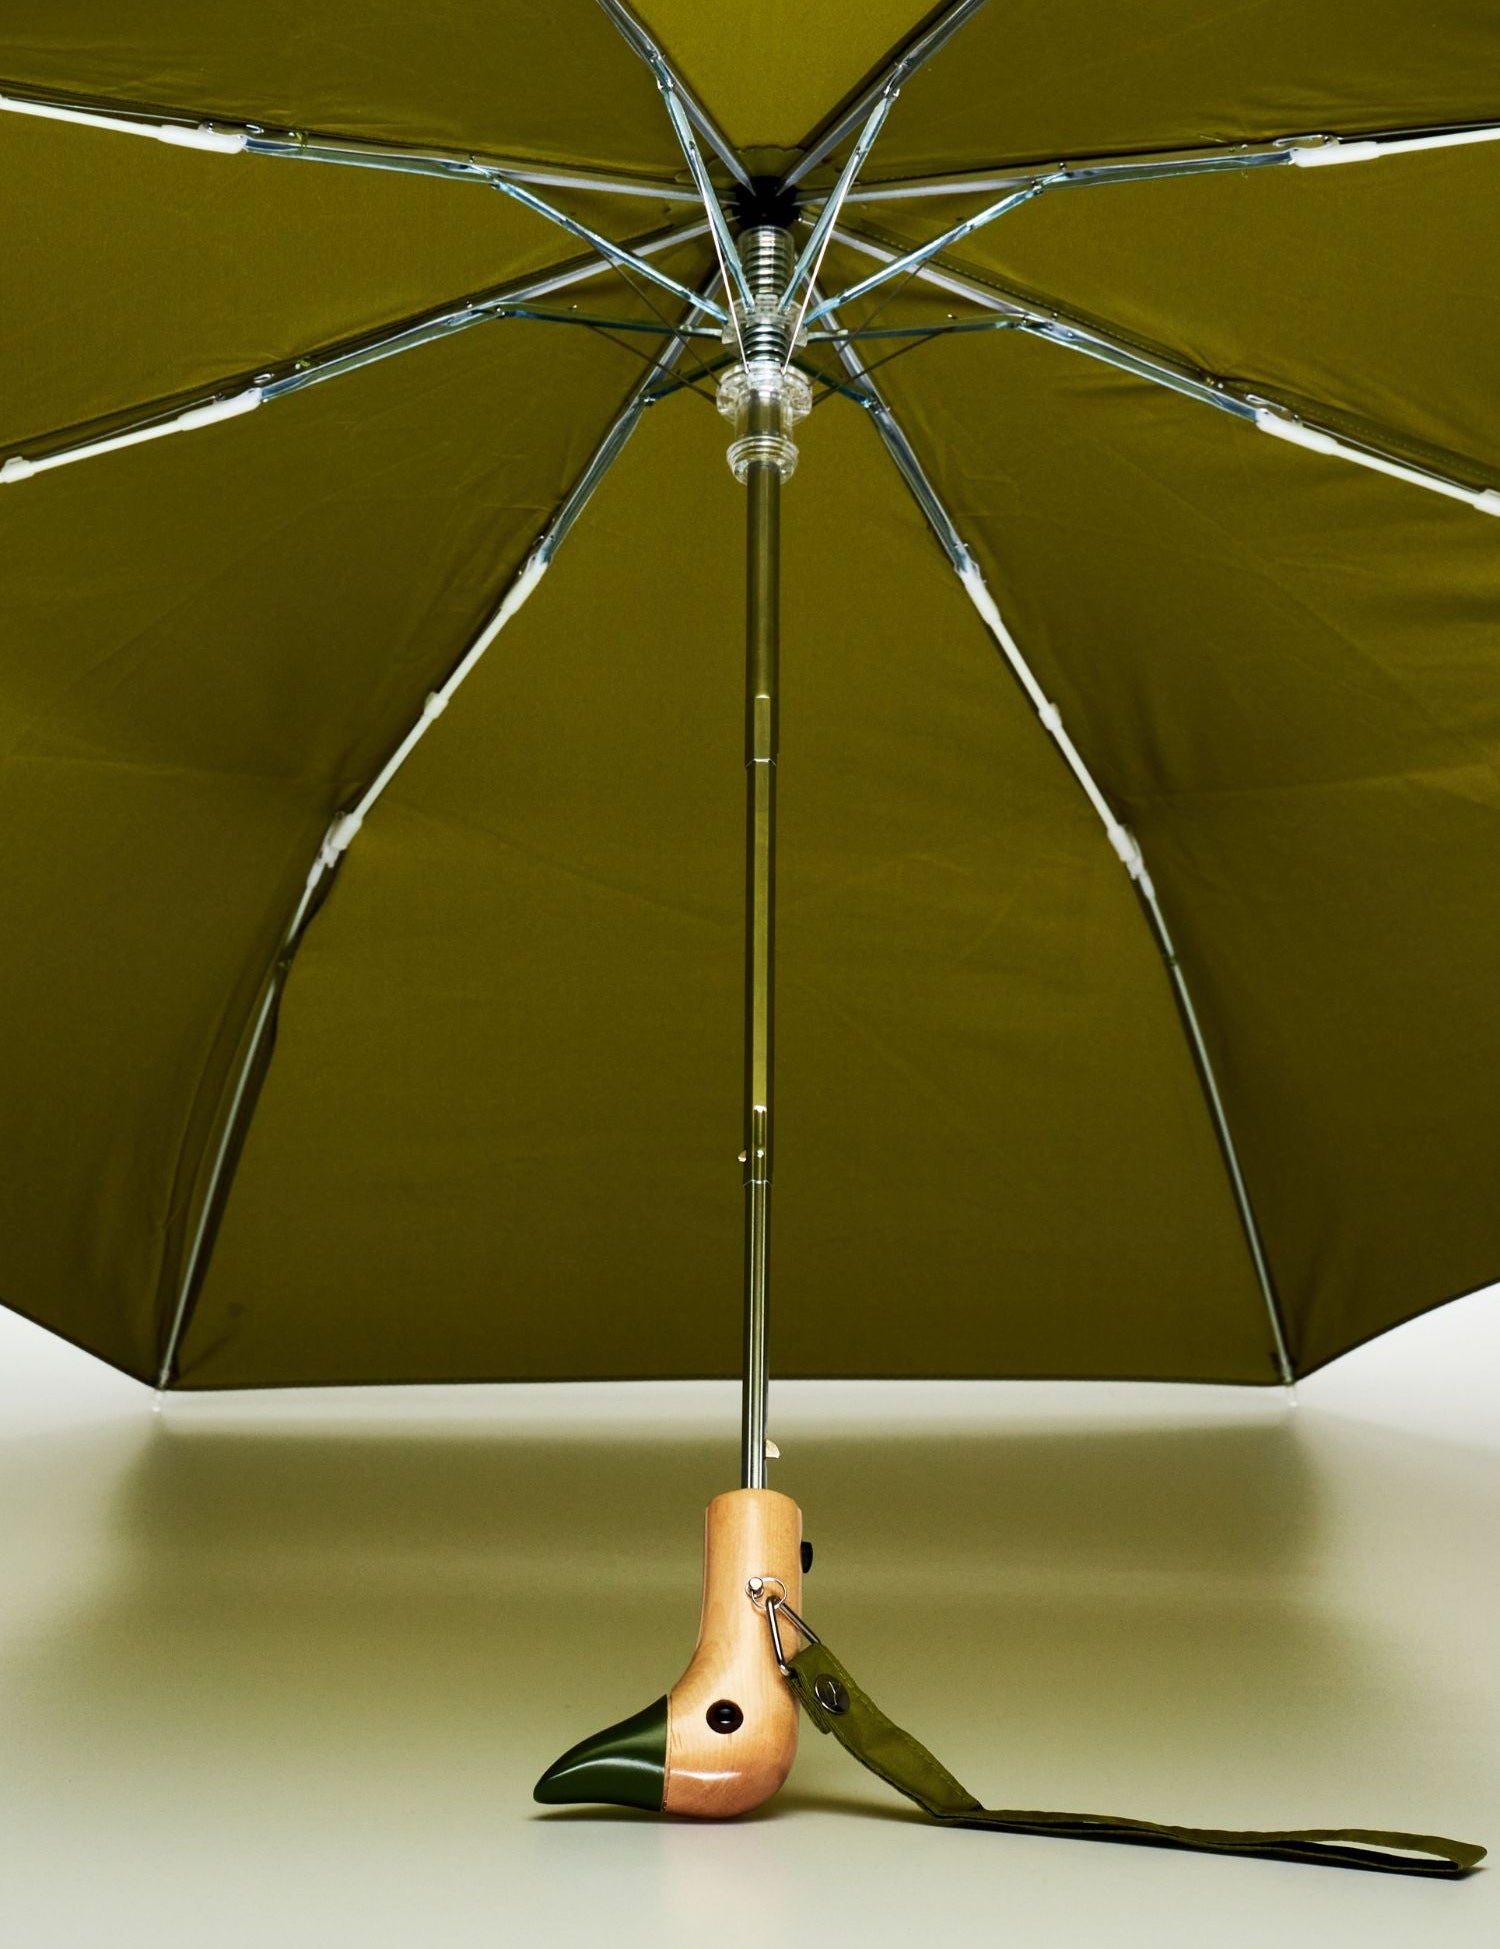 original-duckhead-olive-resistant-best-umbrella_5_7d475624-fcfb-438f-9cd7-d0b34dae1480.jpg